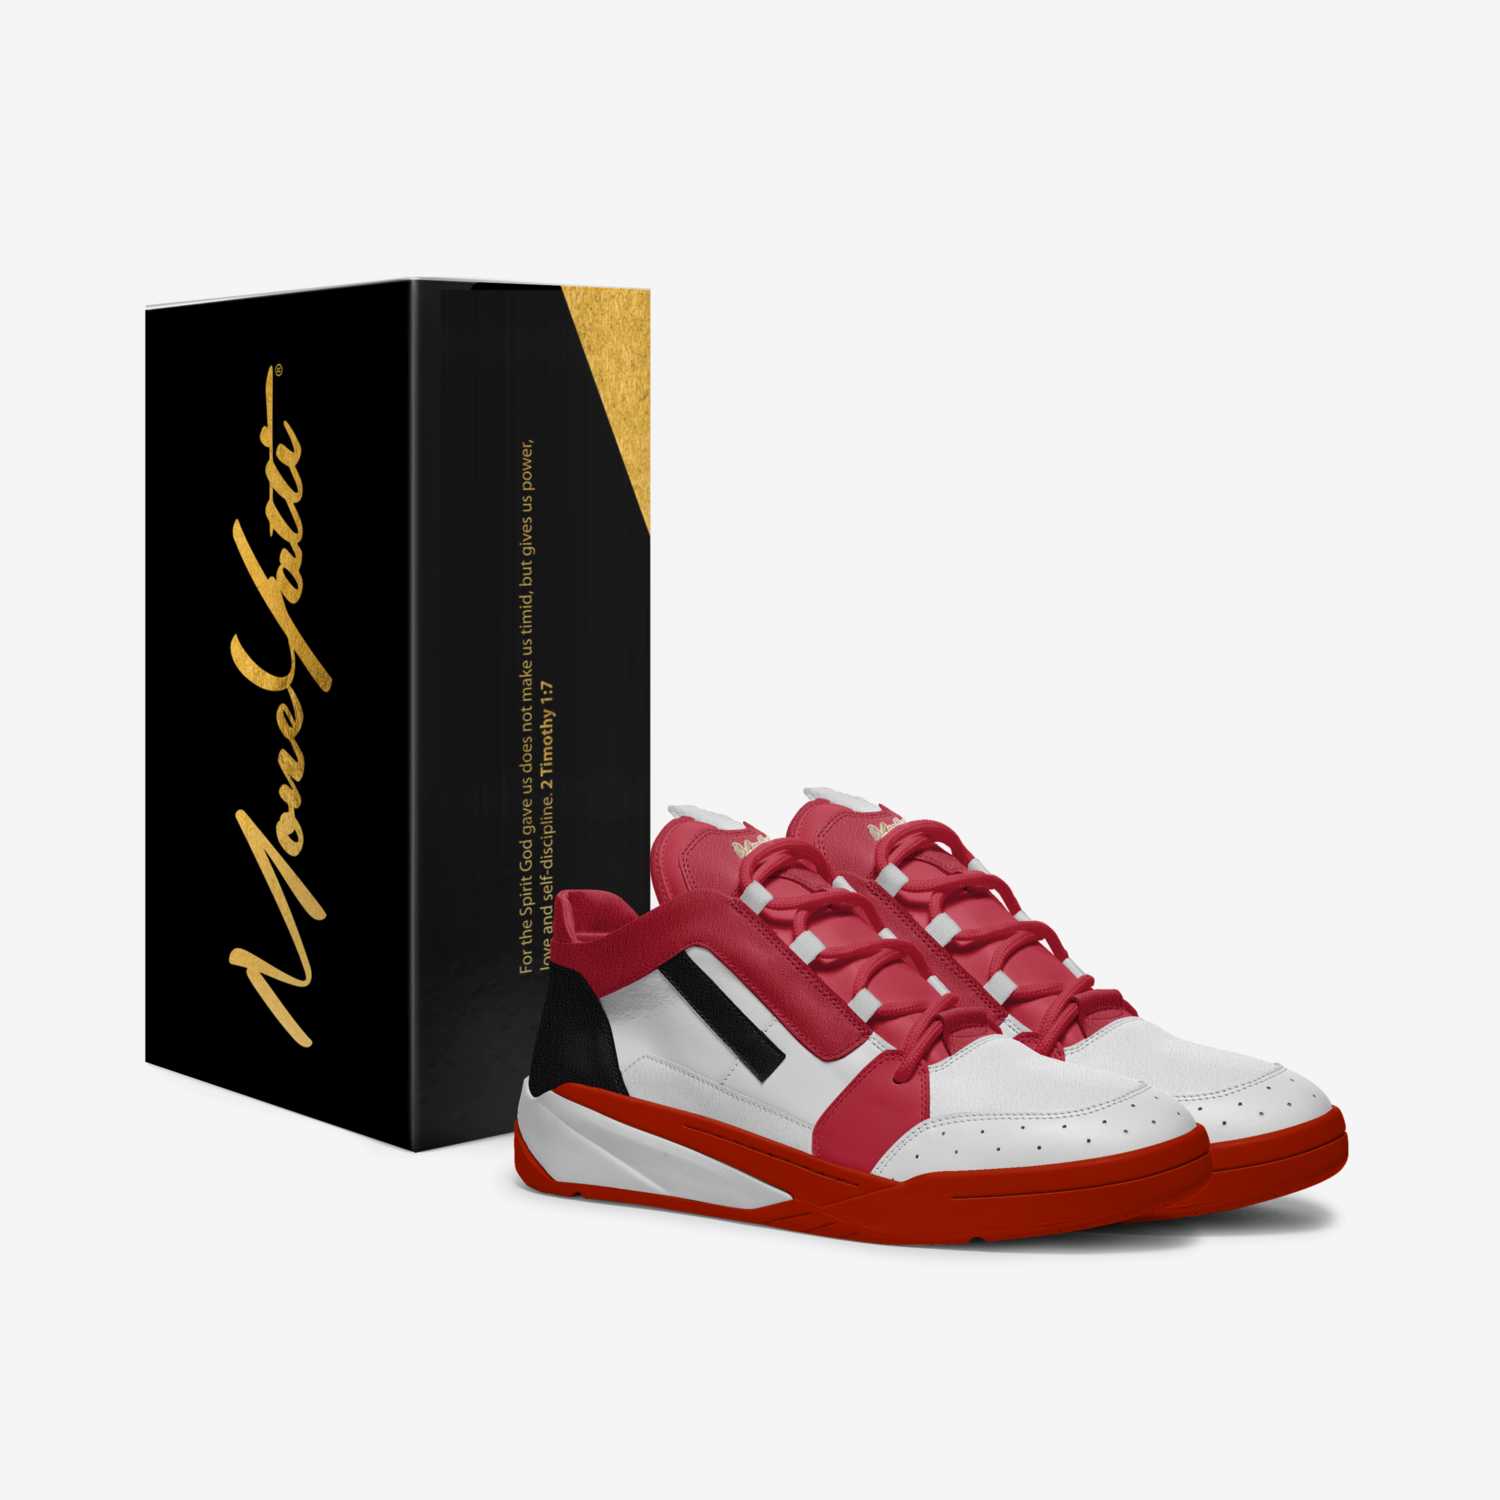 MONEYATTI TURBO 010 custom made in Italy shoes by Moneyatti Brand | Box view